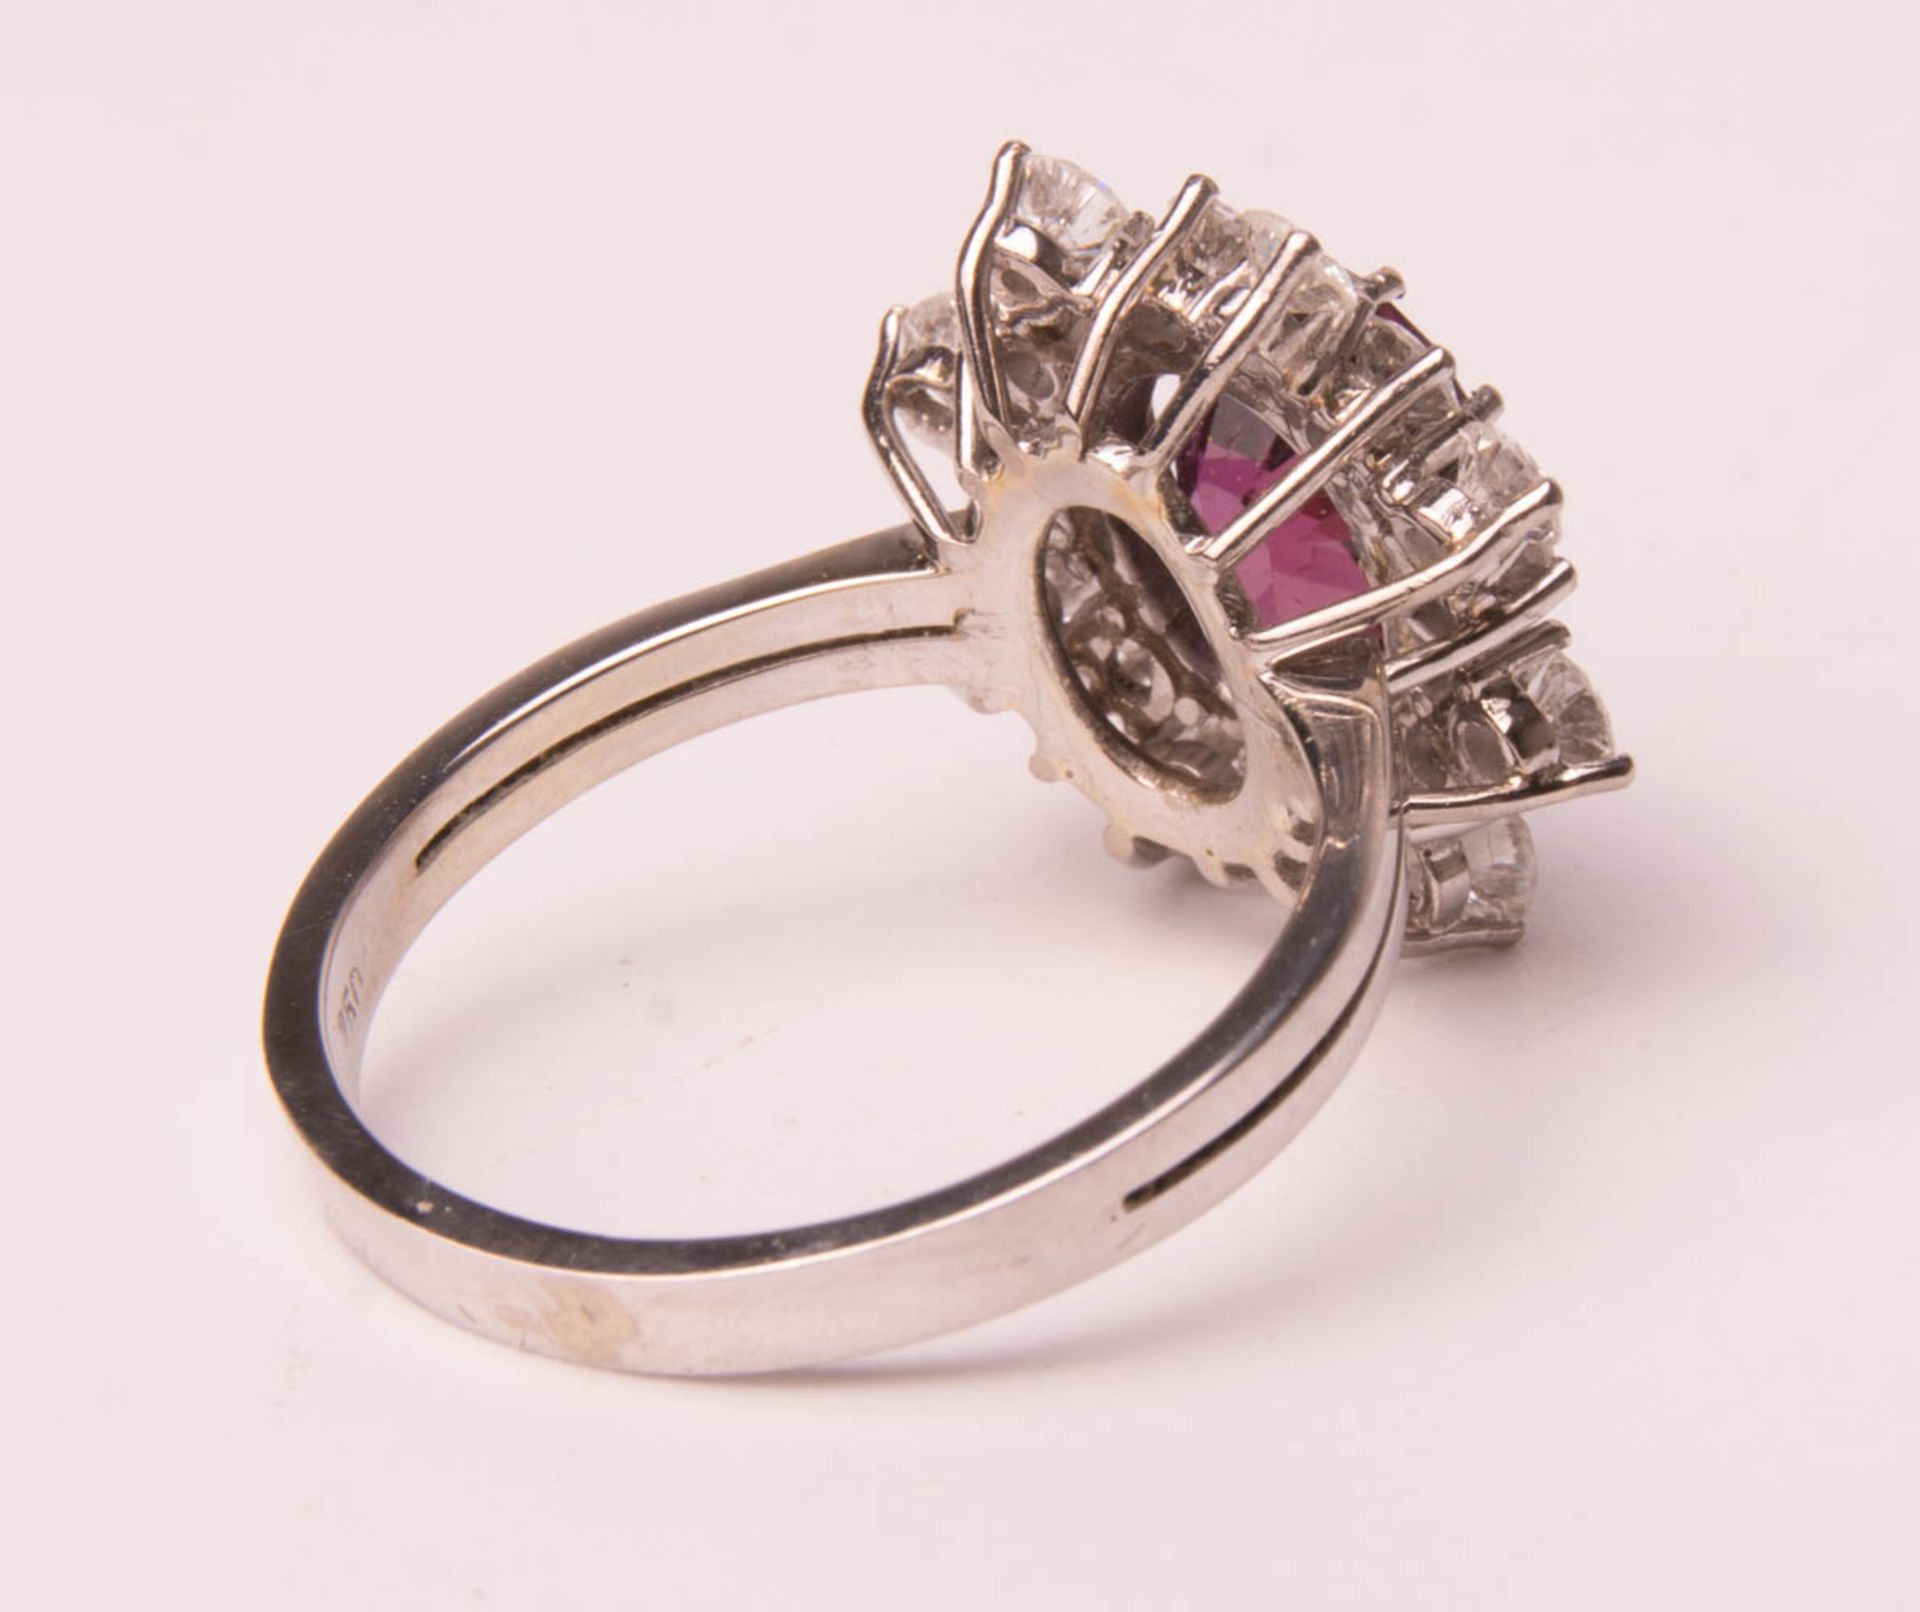 Wunderschöner Ring mit Amethyst und Diamanten, 750er Weißgold. - Bild 5 aus 7